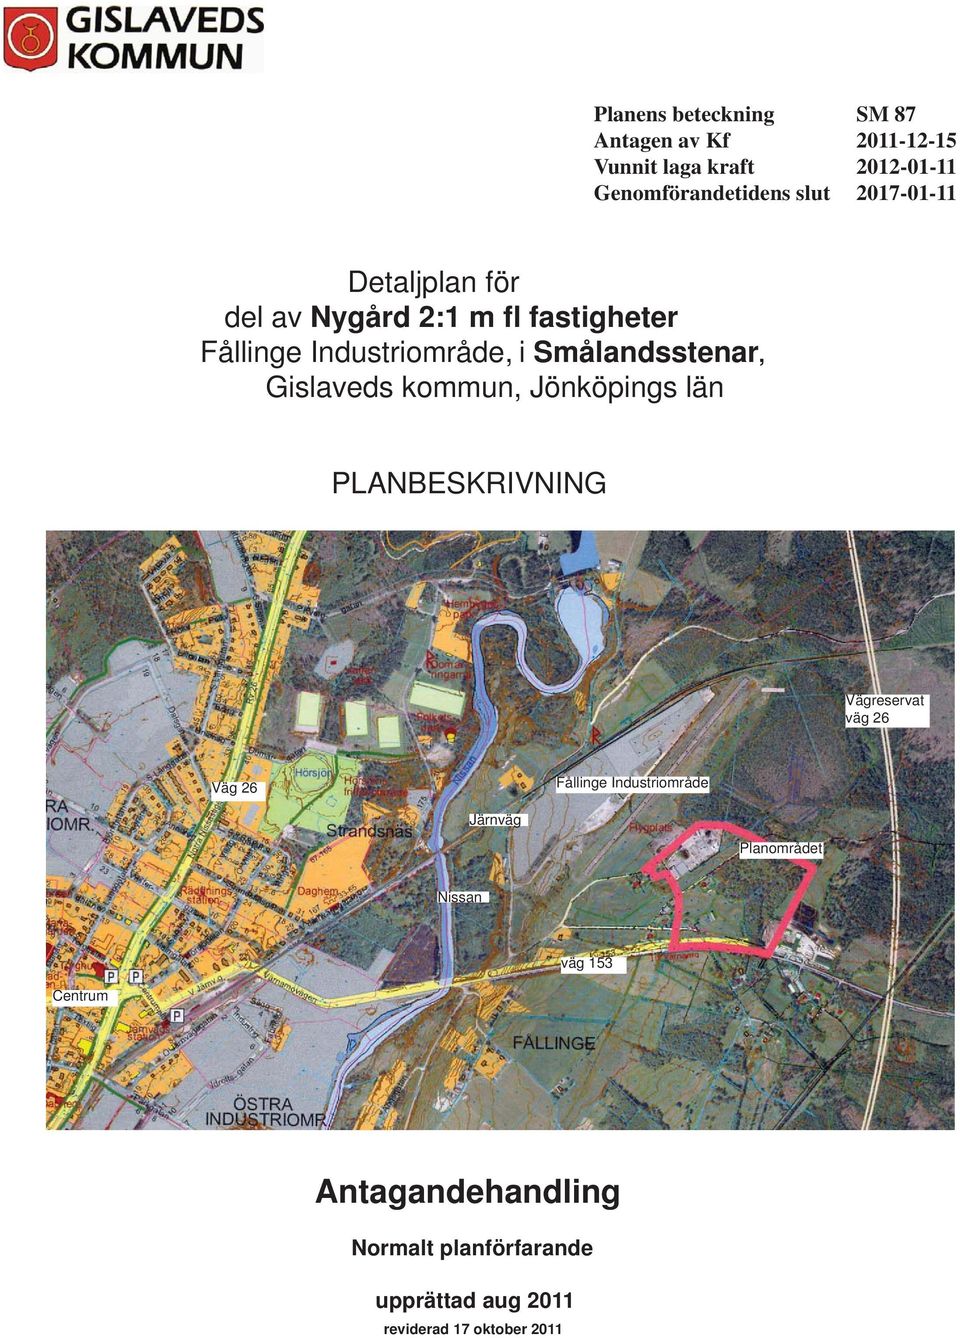 Gislaveds kommun, Jönköpings län PLANBESKRIVNING Vägreservat väg 26 Väg 26 Fållinge Industriområde Järnväg